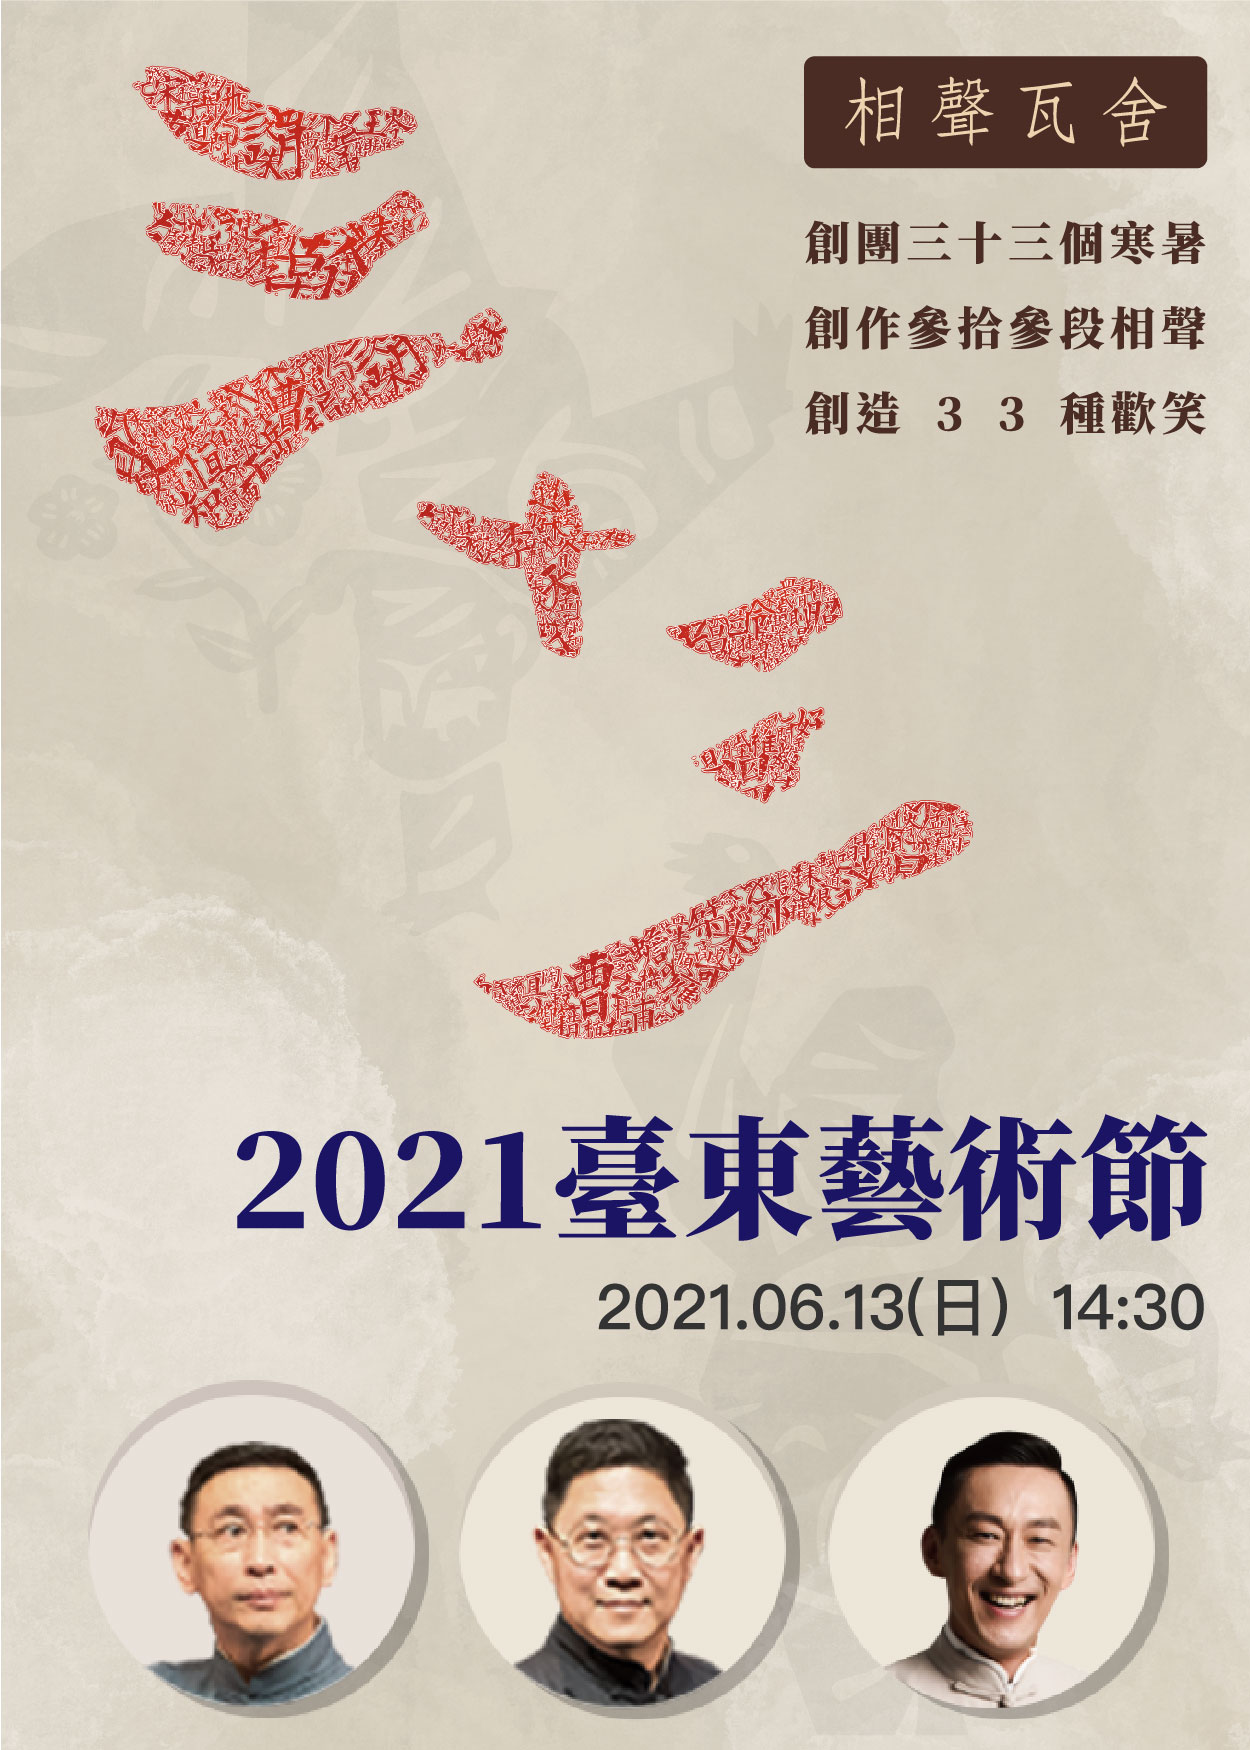 【表演】2021臺東藝術節《三十三》